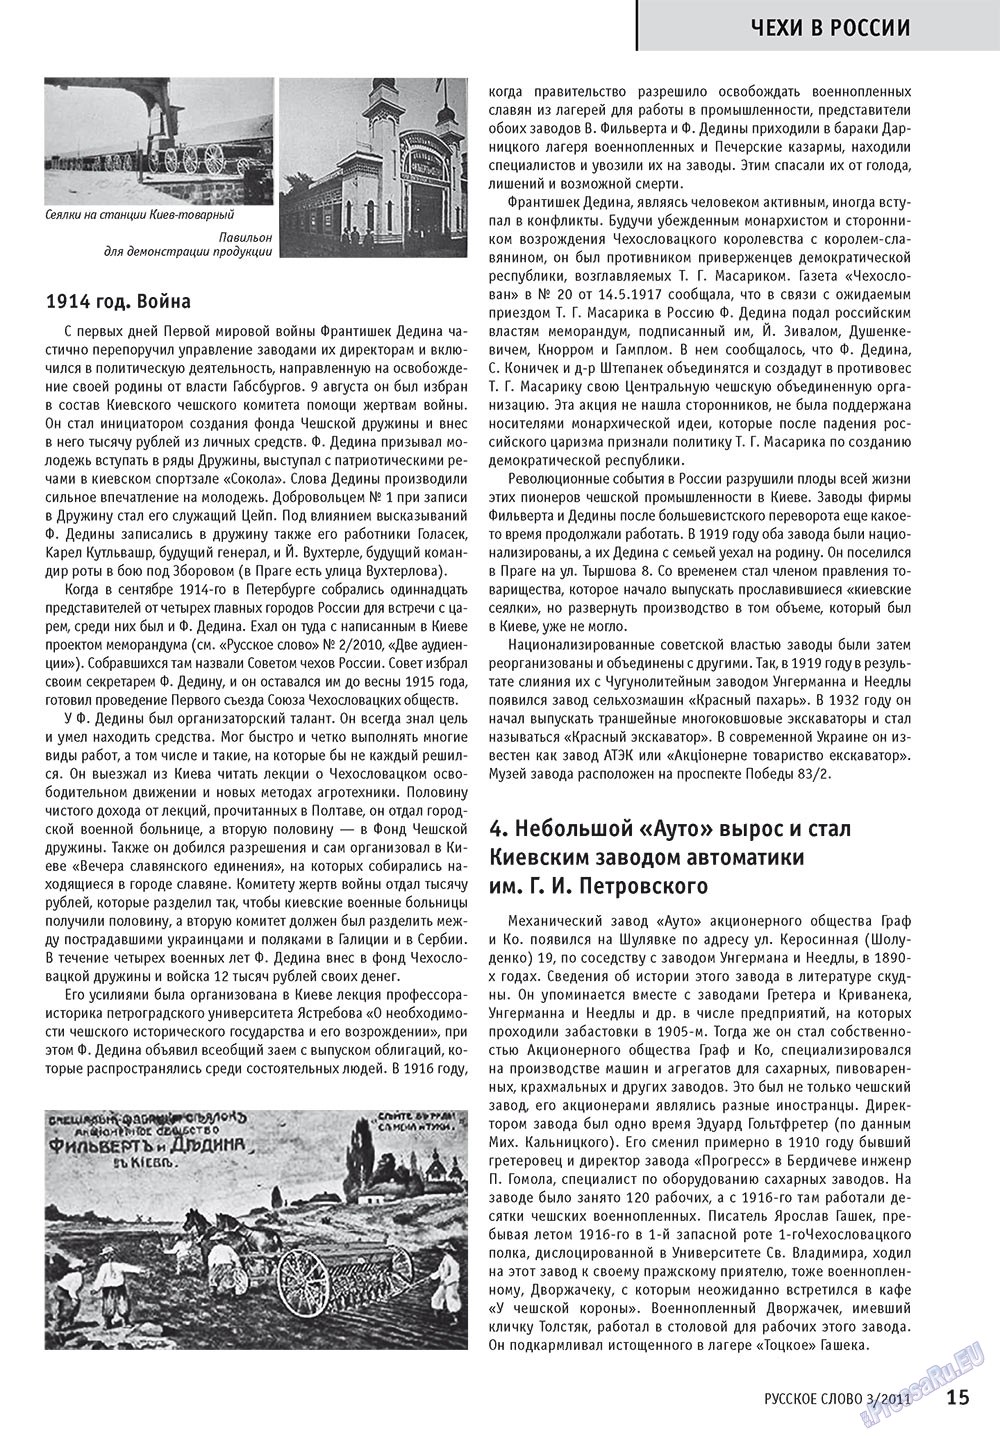 Русское слово, журнал. 2011 №3 стр.17